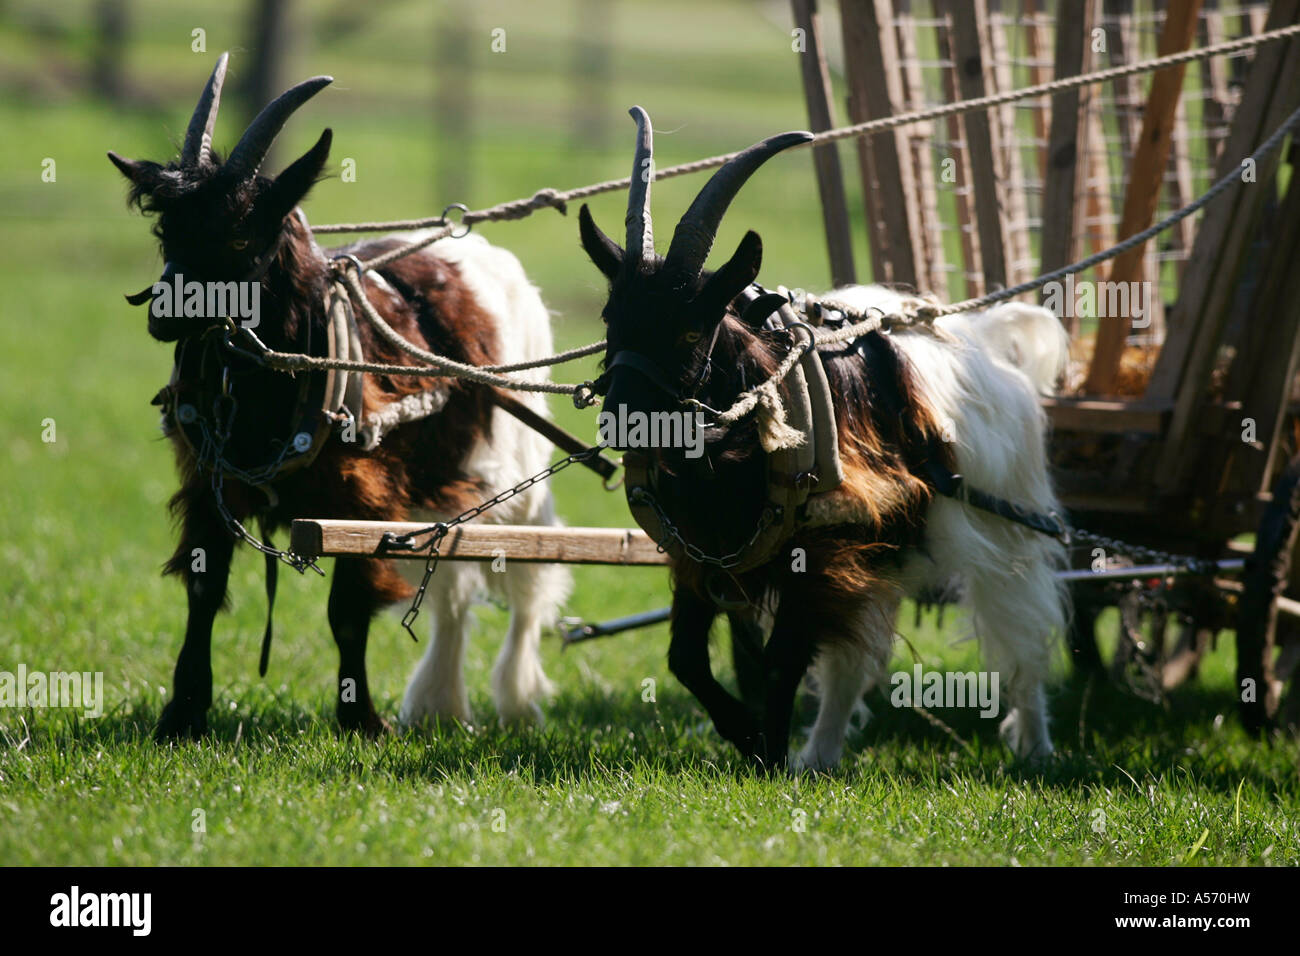 Walliser Ziegen, Goats Stock Photo